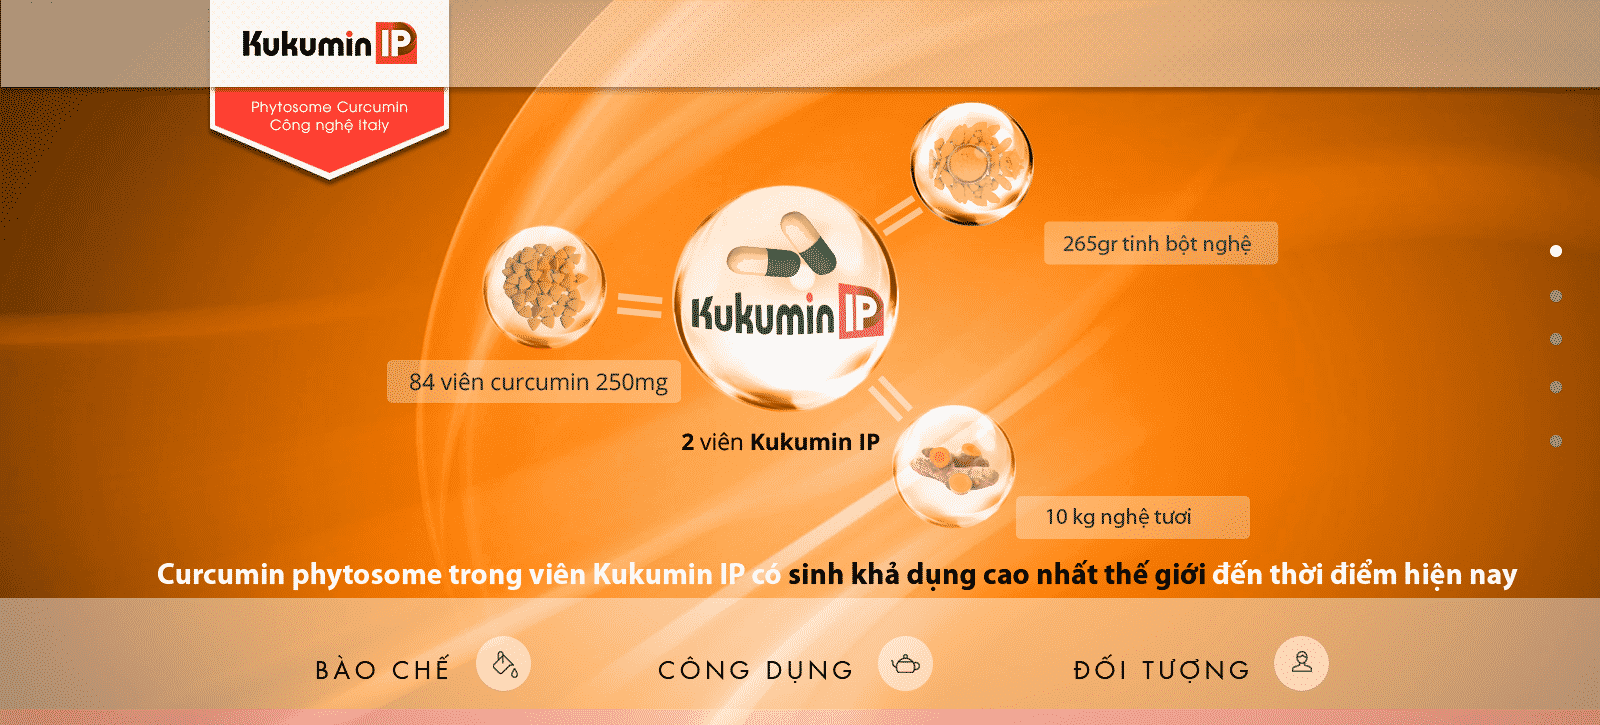 Kukumin IP sinh khả dụng cao, công nghệ phytosome, điều trị viêm loét dạ dày, tá tràng, ung thư, viêm đại tràng